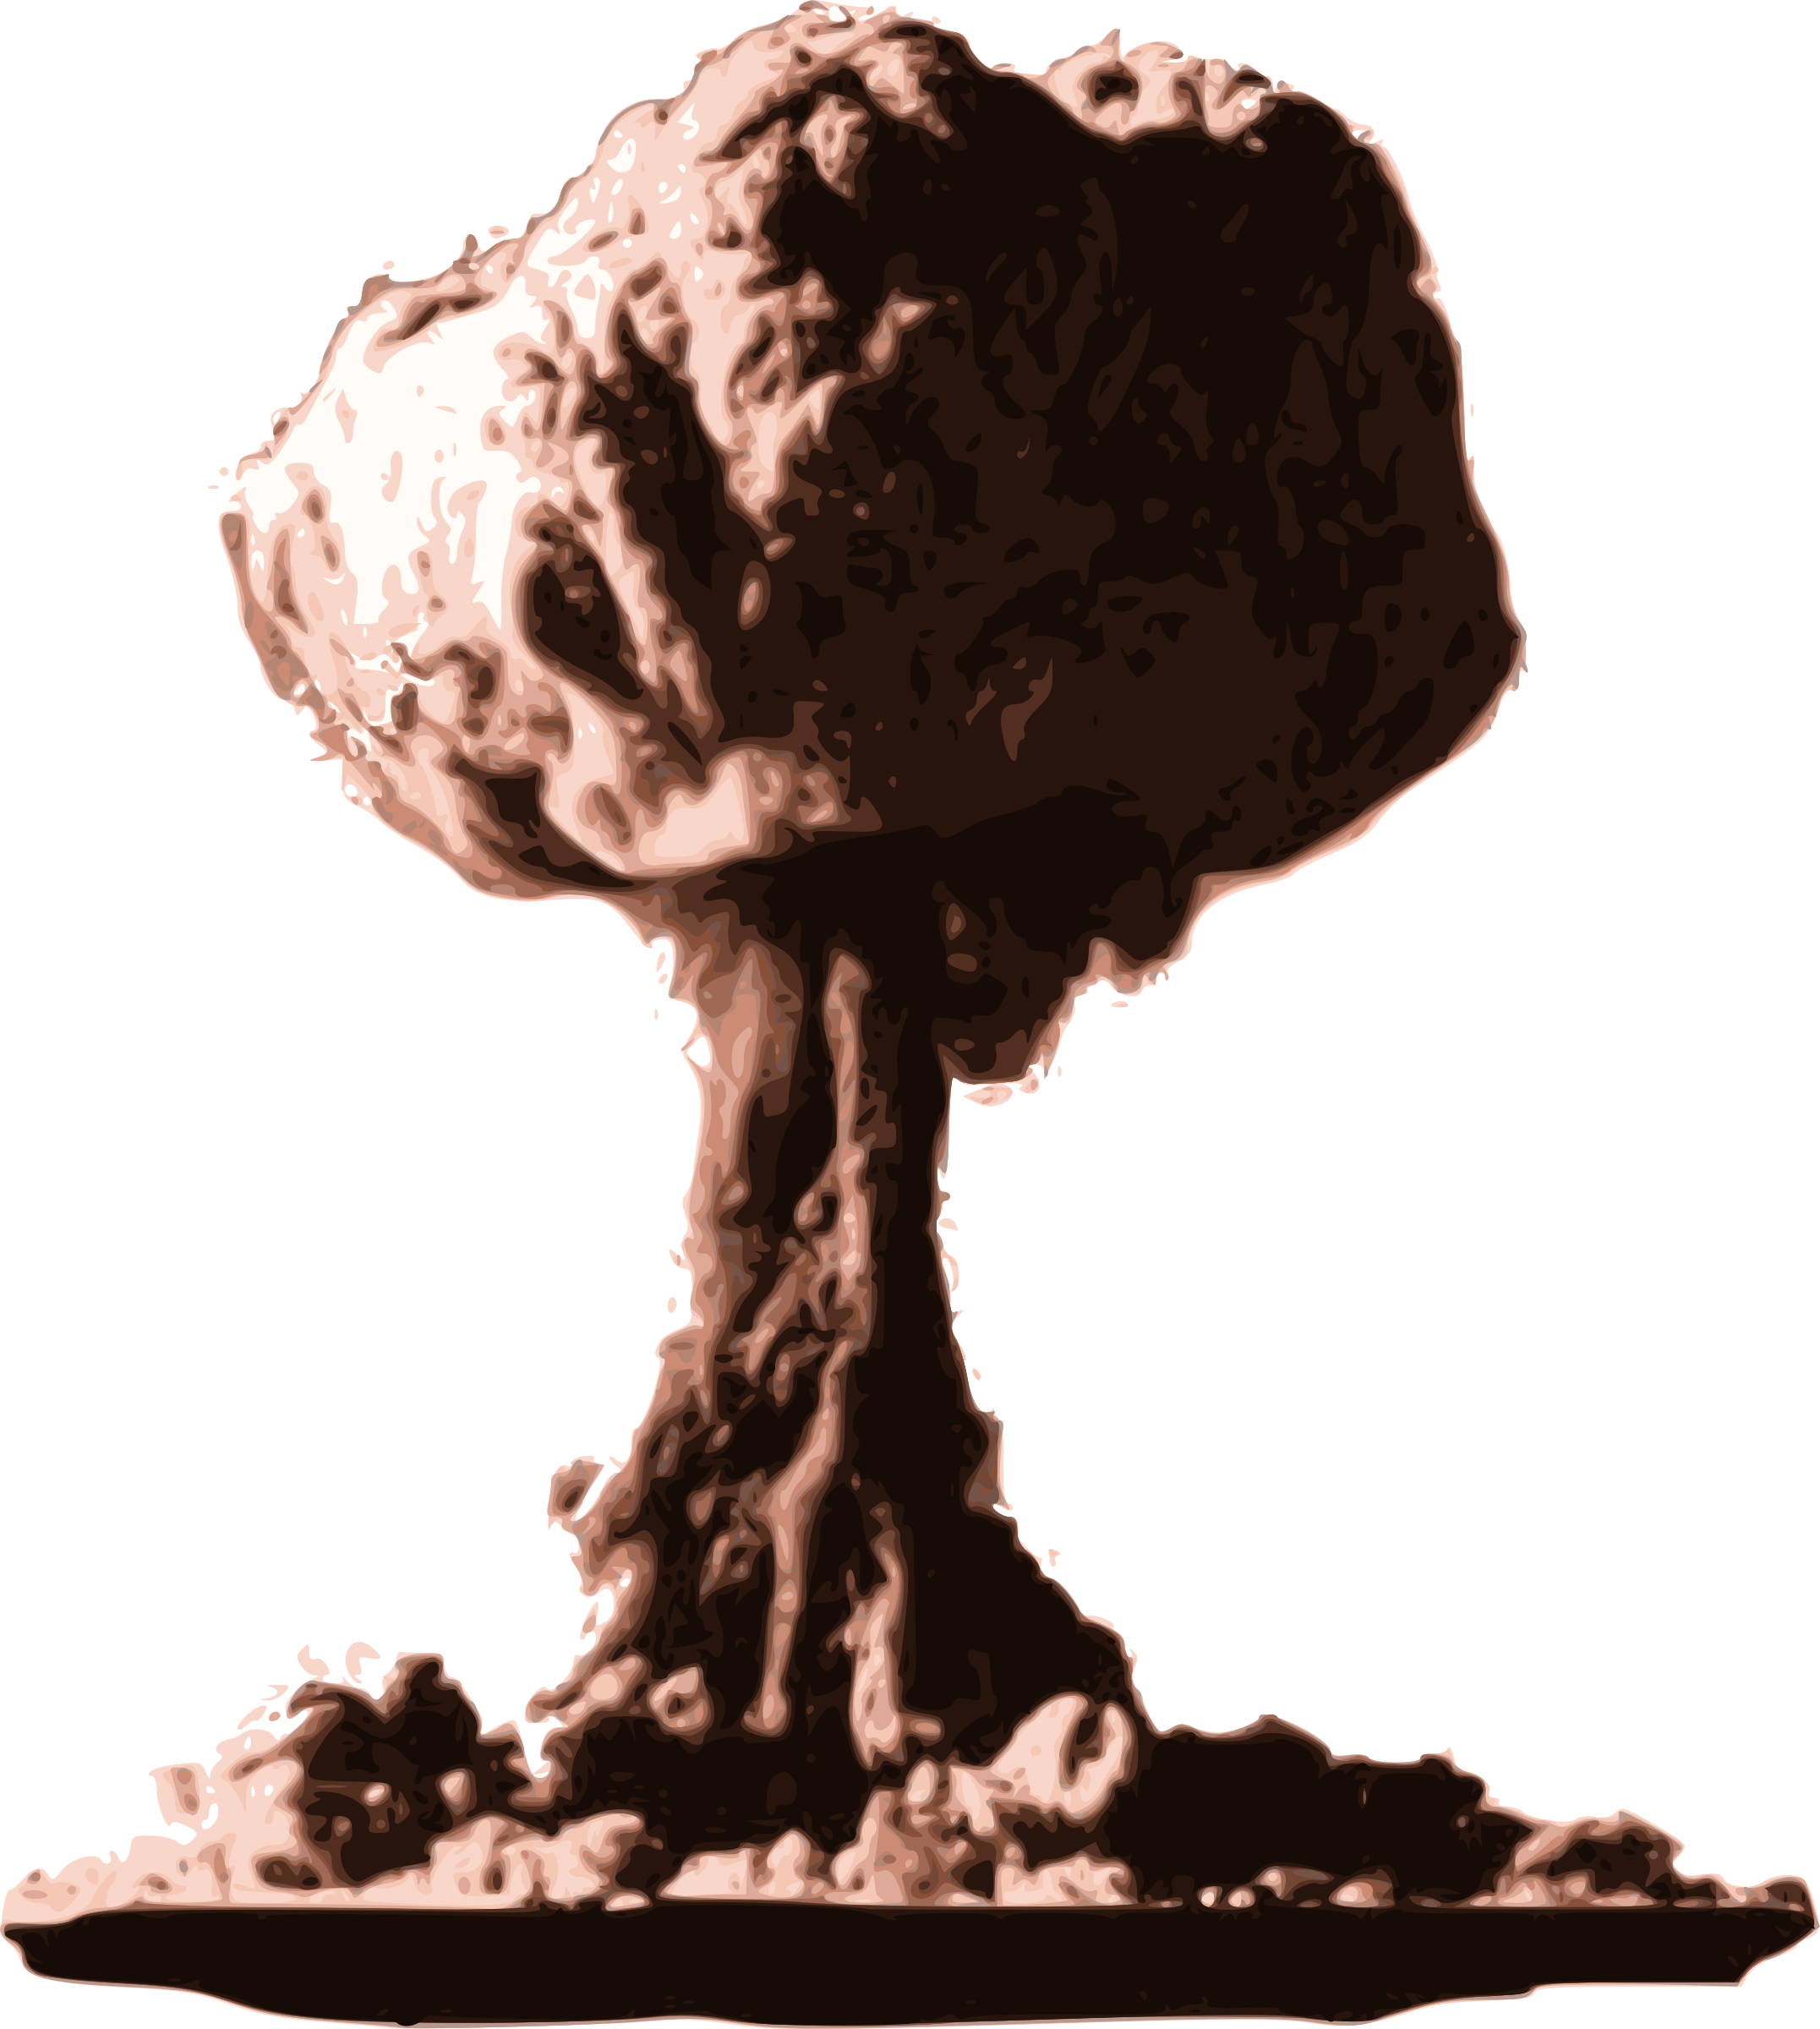 Nuage de champignon d'explosion nucléaire